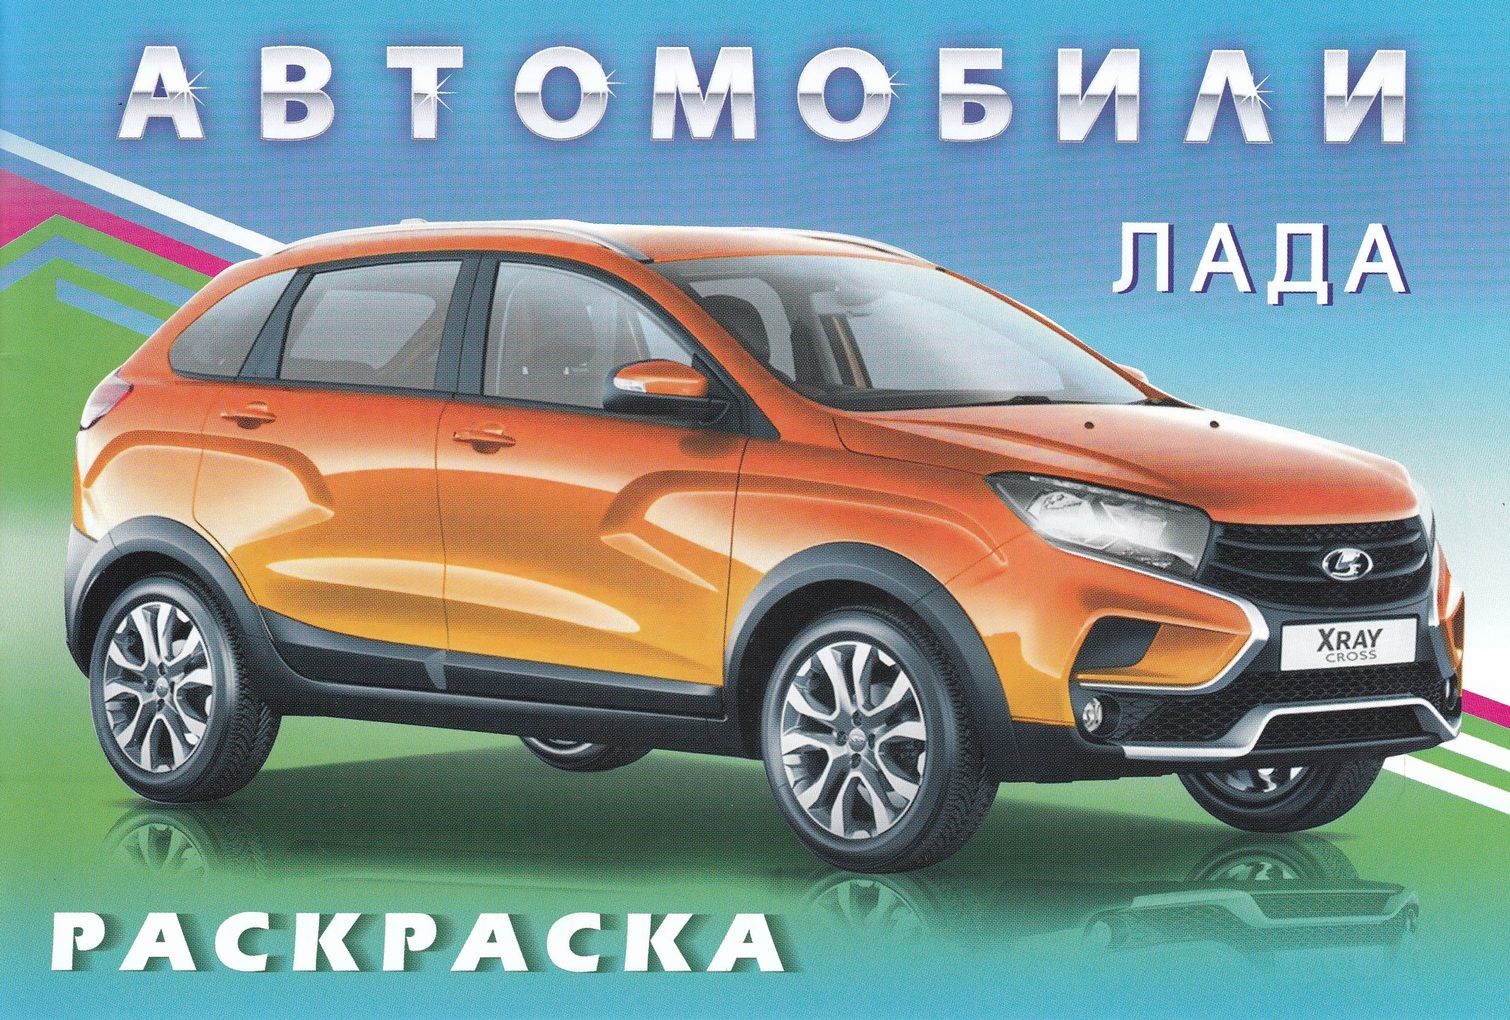 Появились изображения и характеристики обновленной Lada Vesta для спецслужб РФ